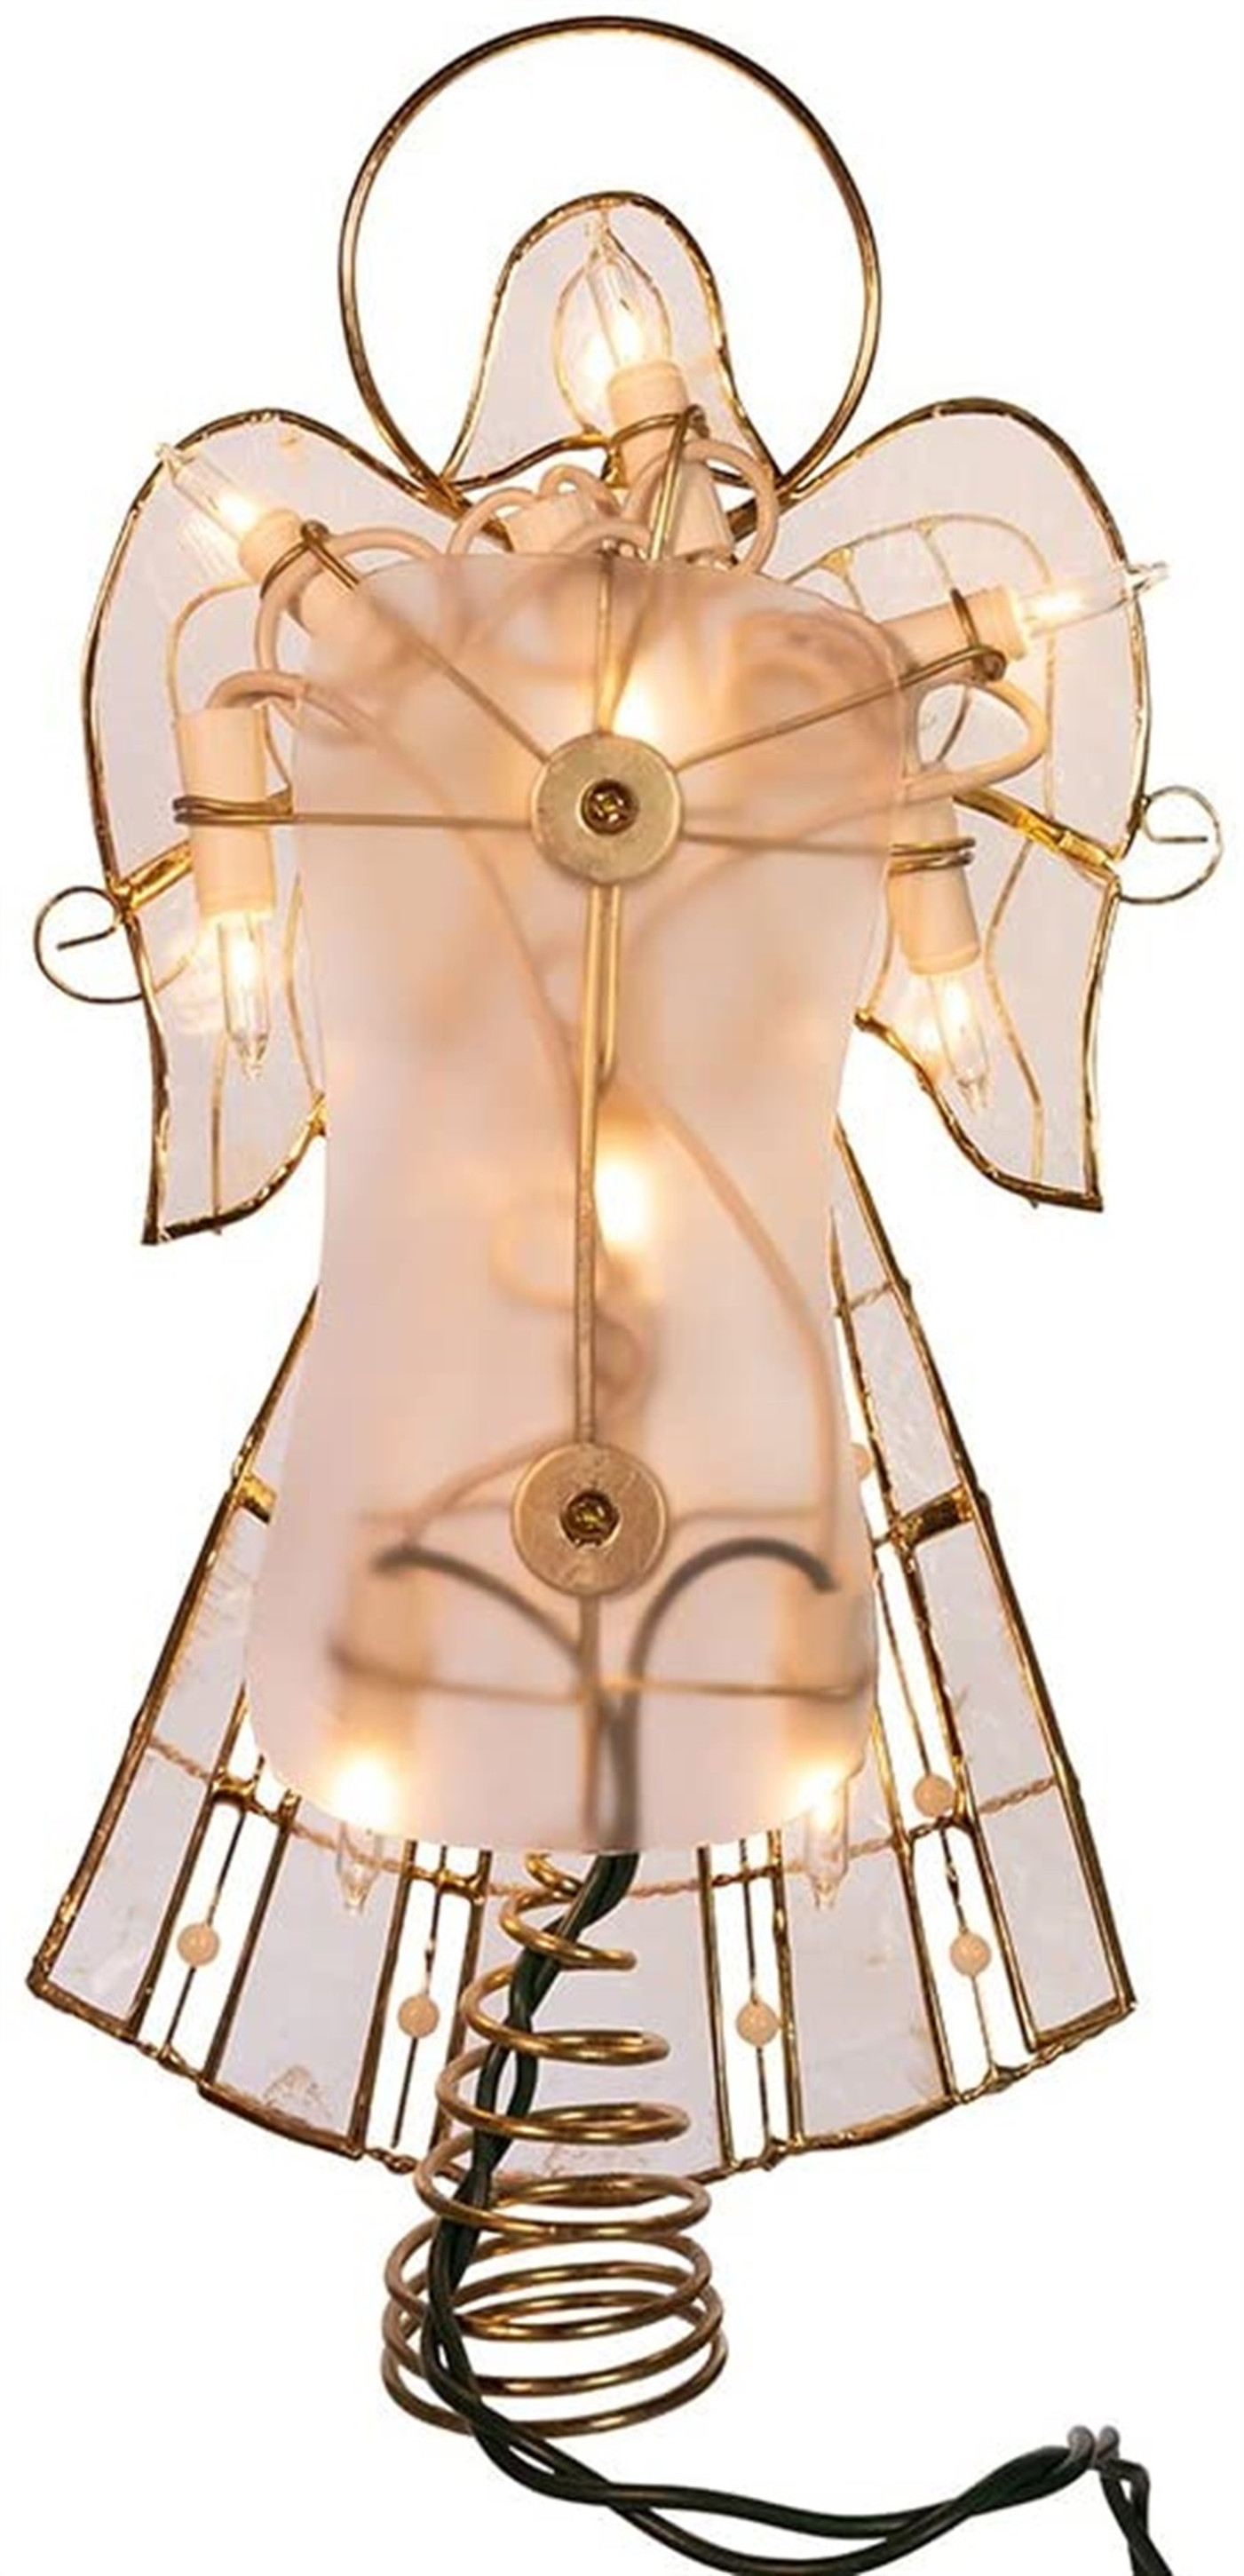 Kurt Adle 10-light Capiz Angel with Vines & Pearls Lighted Treetop, 10"